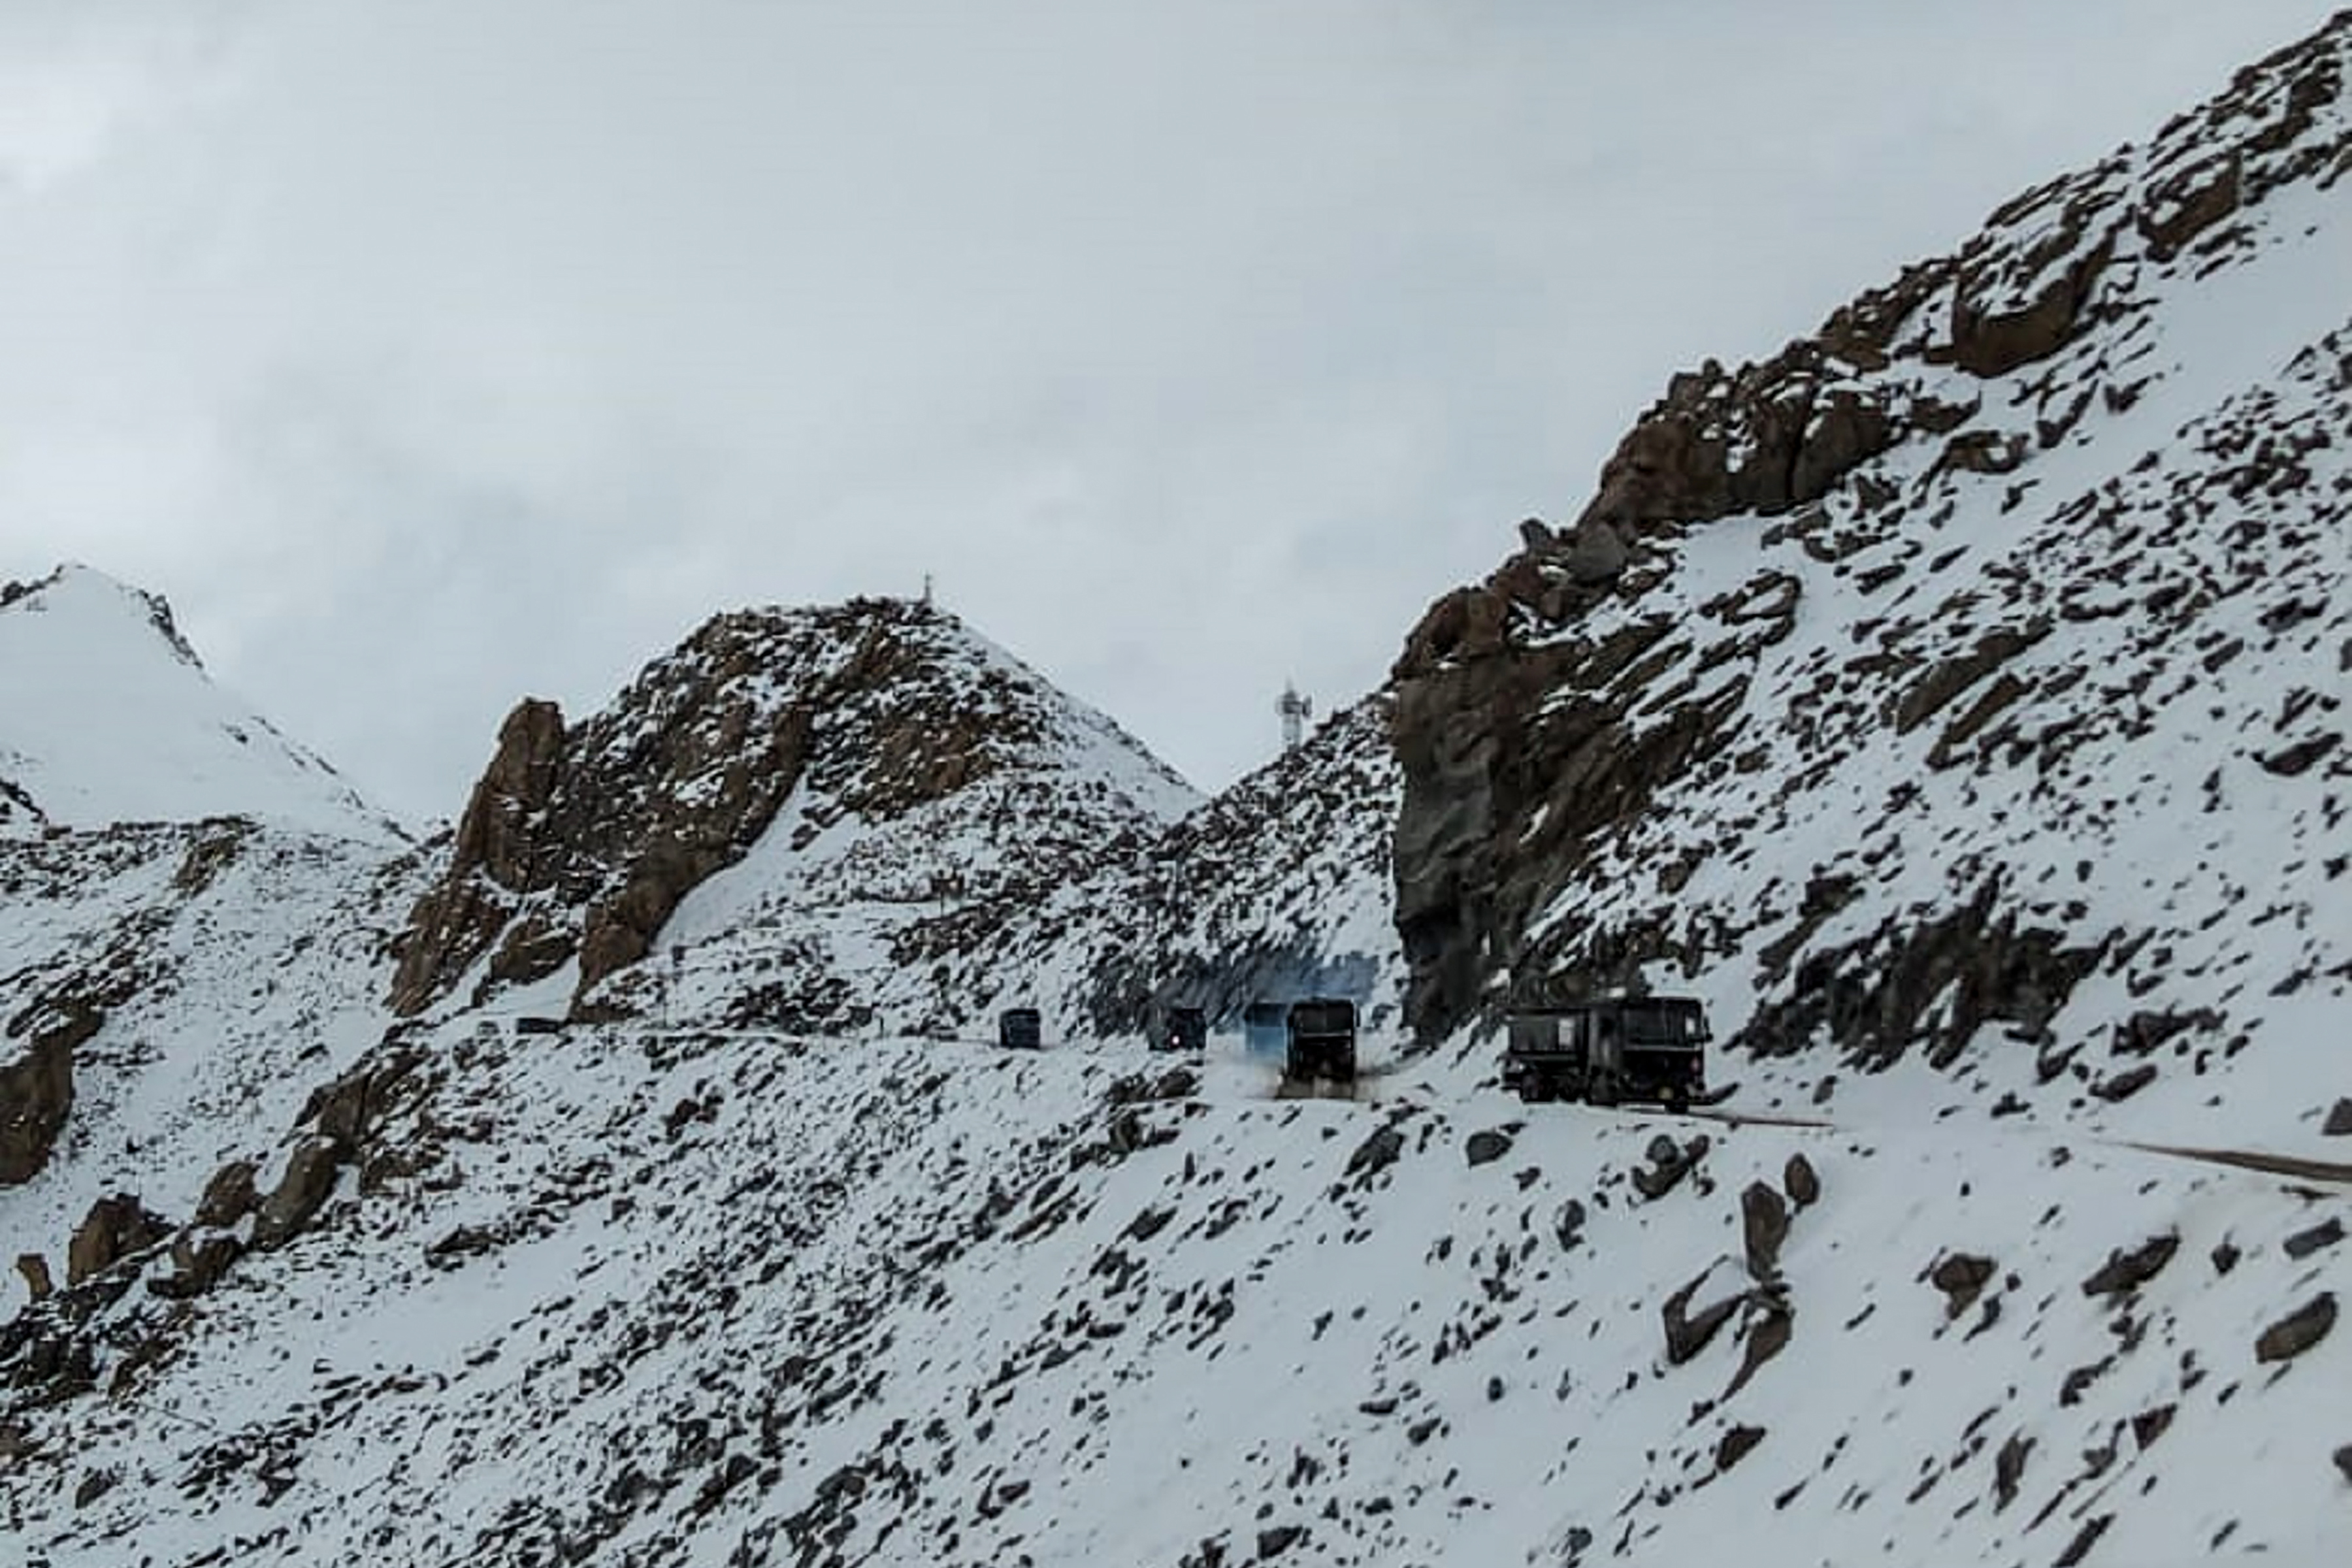 Xe của quân đội Ấn Độ đi trên một con đường gần đèo cao Chang La ở vùng Ladakh phía bắc Ấn Độ, gần biên giới với Trung Quốc vào ngày 17/6/2020. (Ảnh: STR/AFP /Getty qua The Epoch Times)